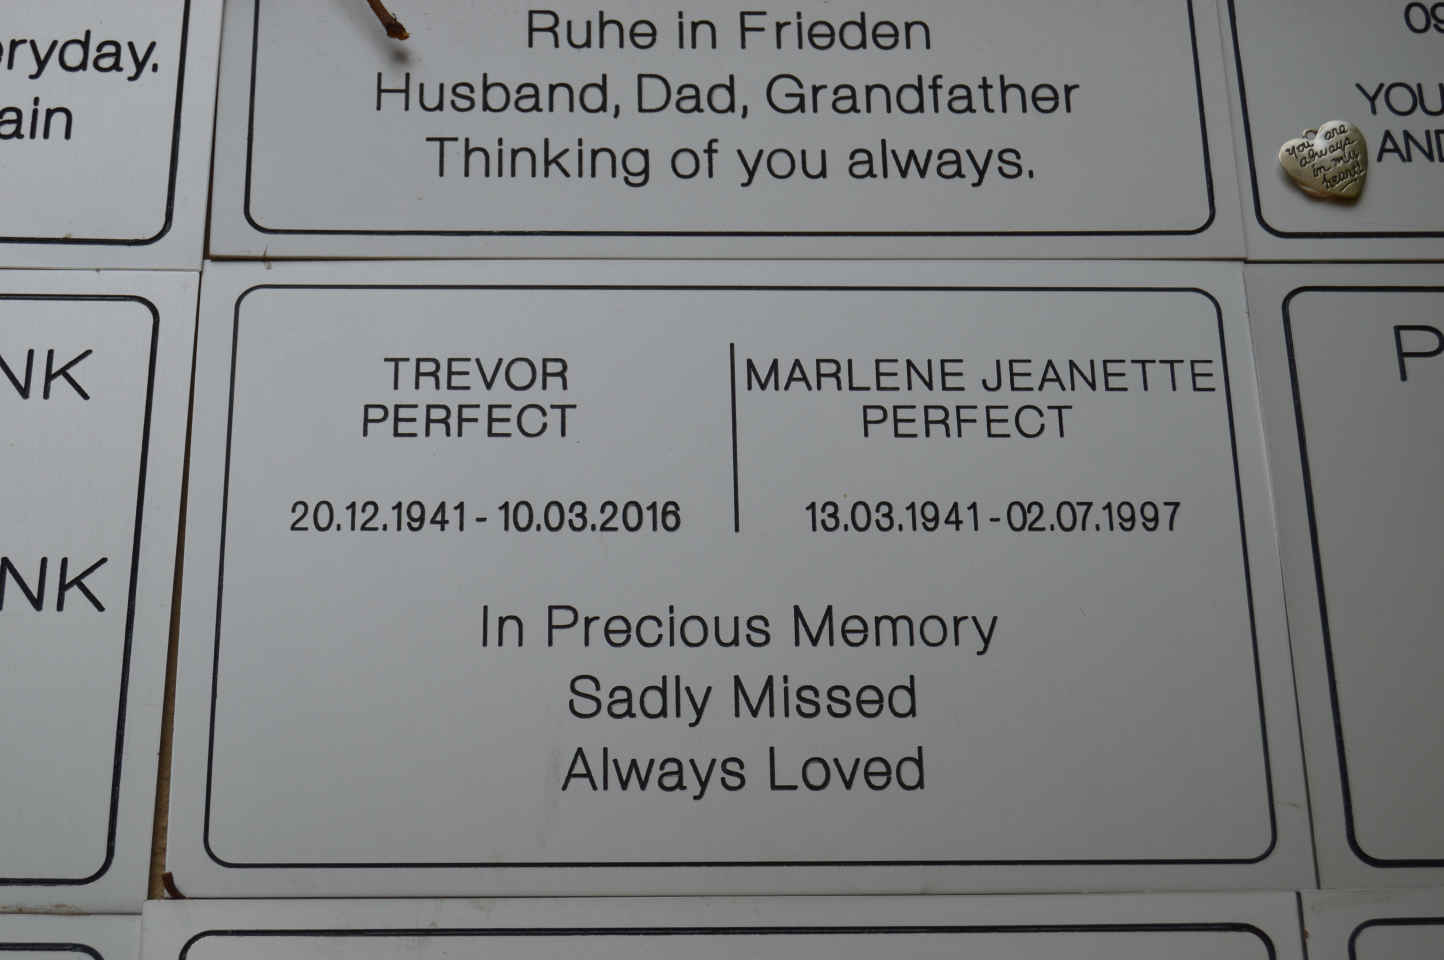 PERFECT Trevor 1941-2016 & Marlene Jeanette 1941-1997